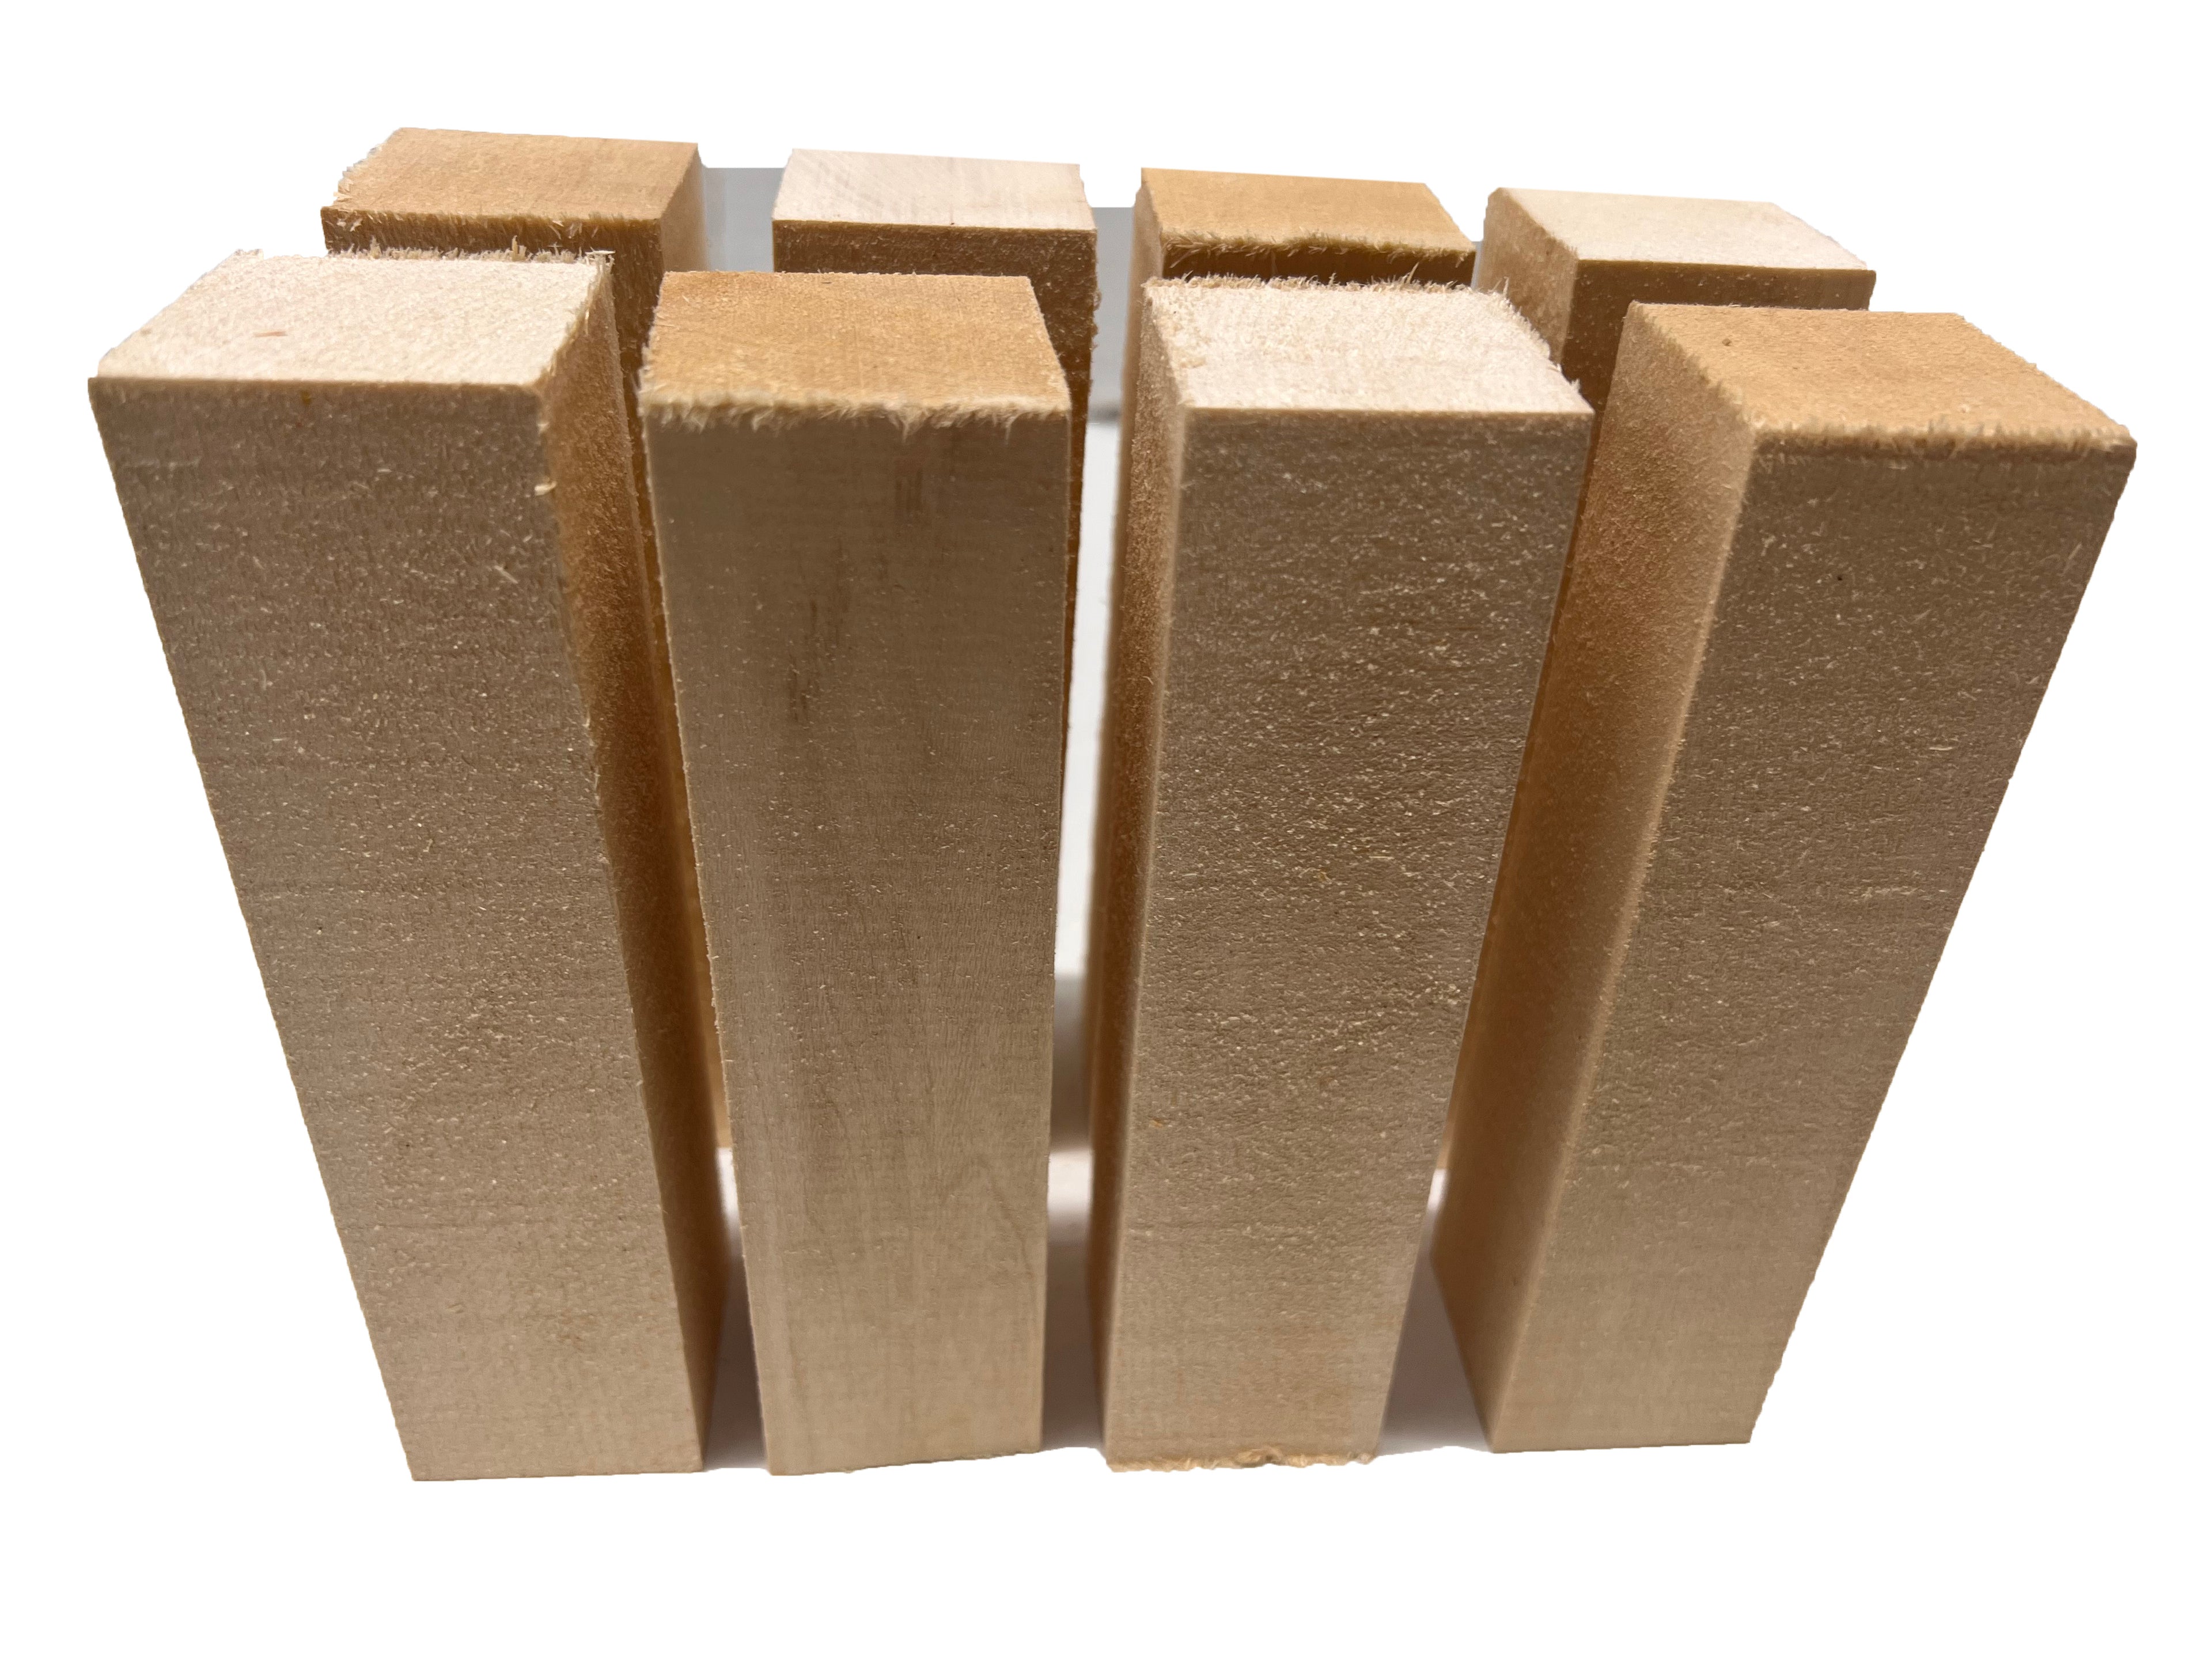 Hermosos bloques de madera de tilo de 4 x 6 x 12 pulgadas Bloque de madera  blanda sin terminar de primera calidad